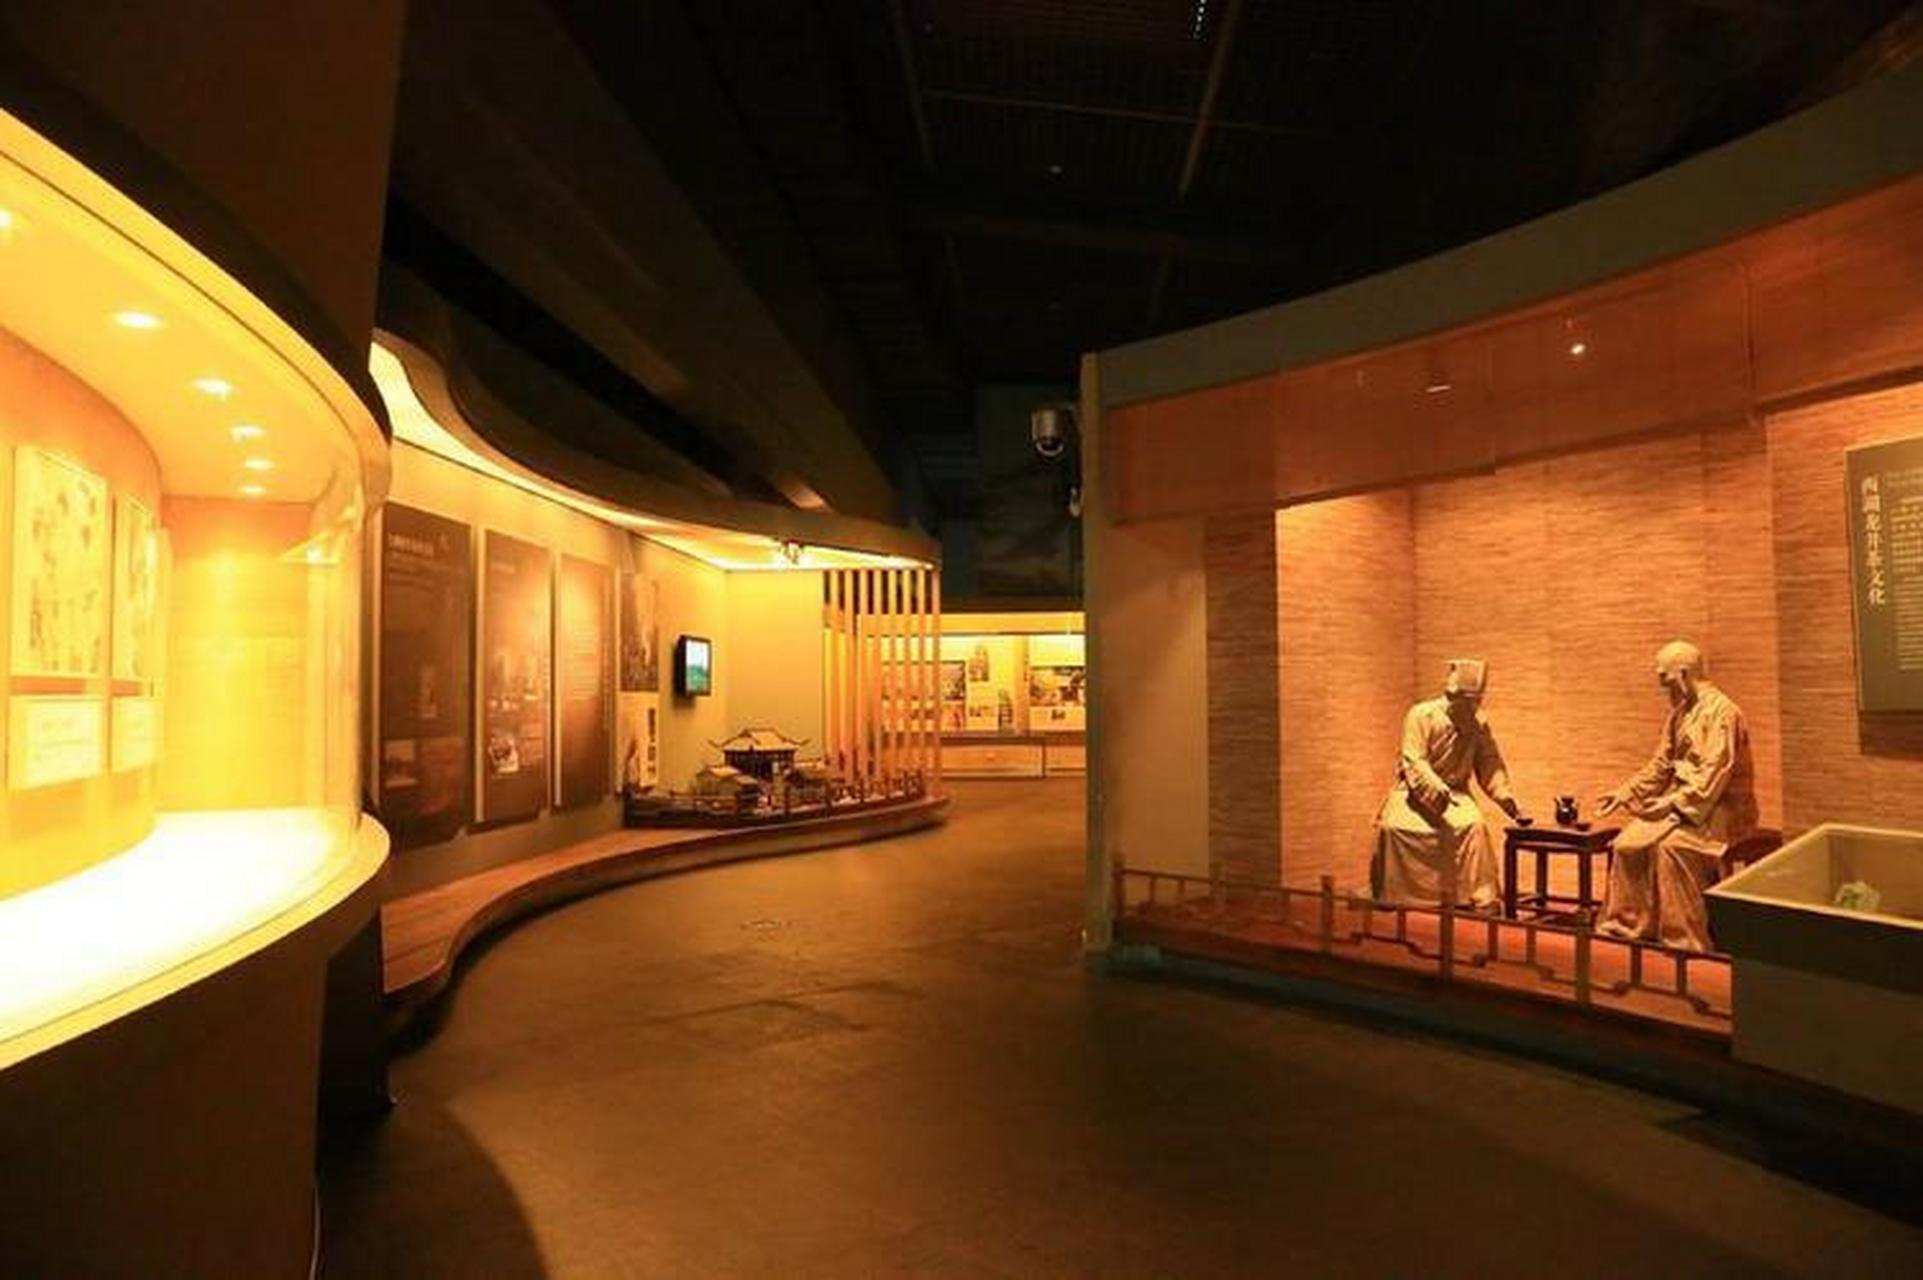 杭州博物馆位于中国浙江省杭州市,是一座融合了传统与现代元素的现代